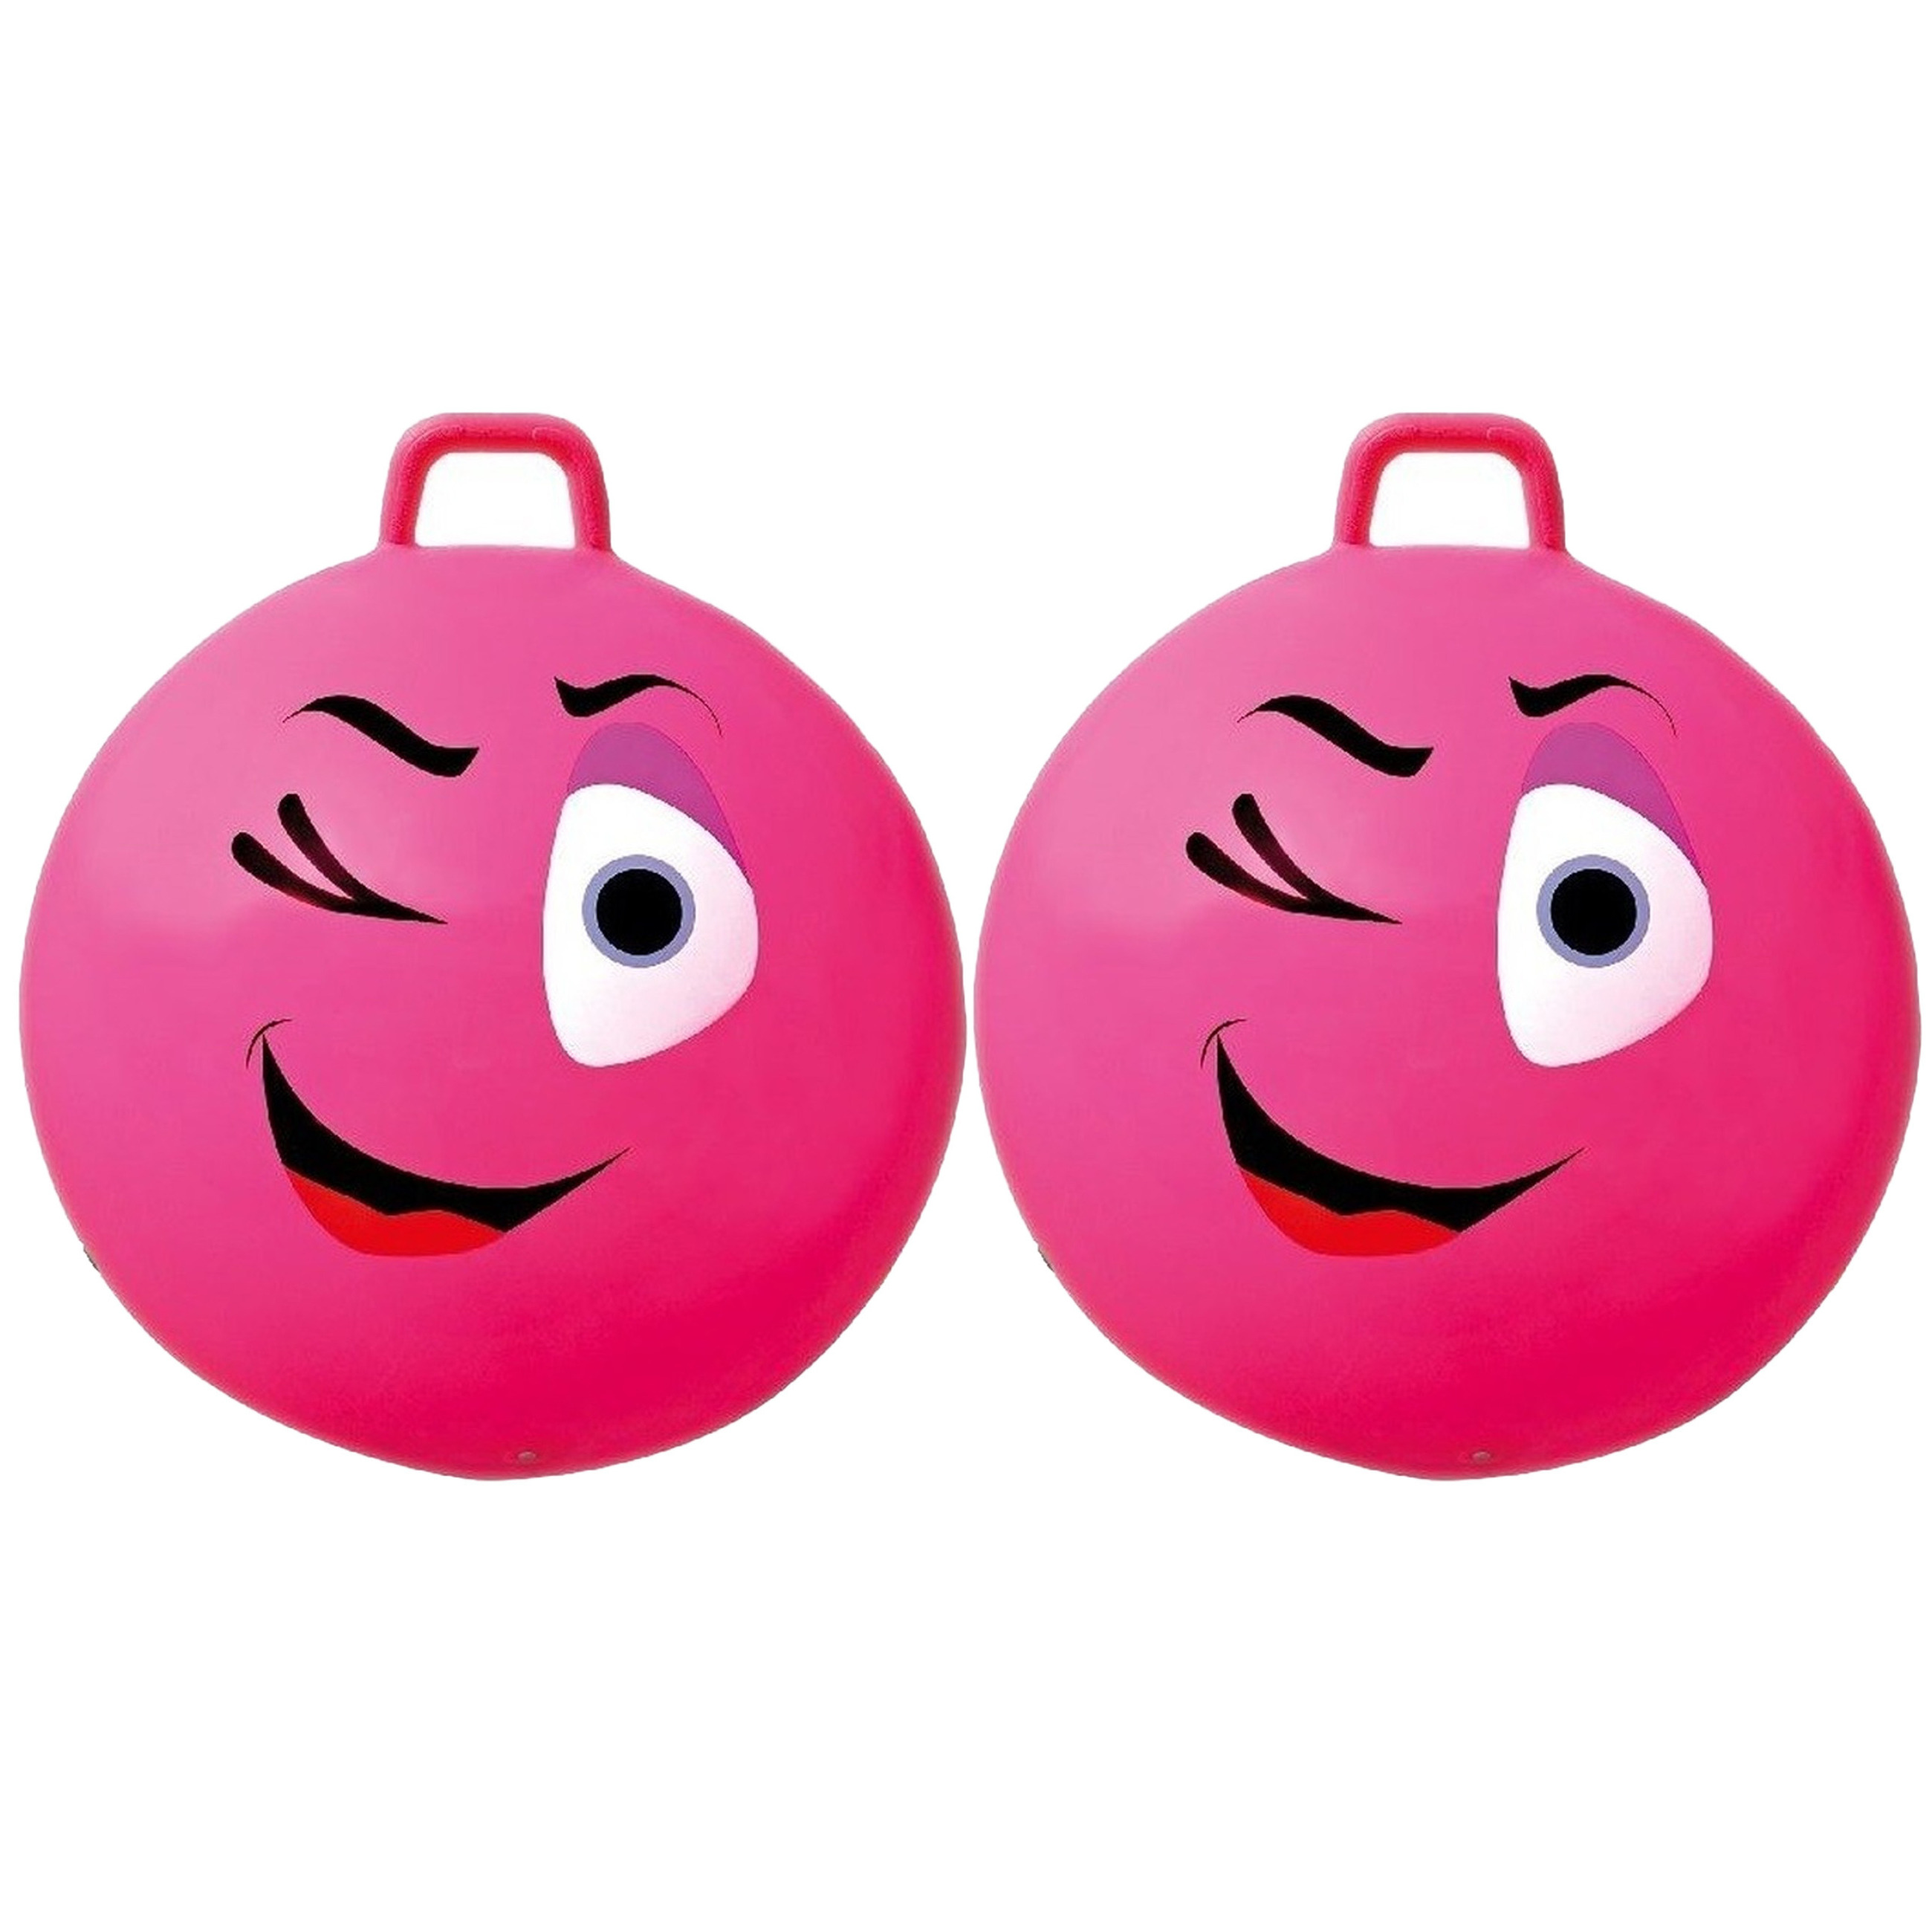 2x stuks roze skippybal smiley voor kinderen 65 cm